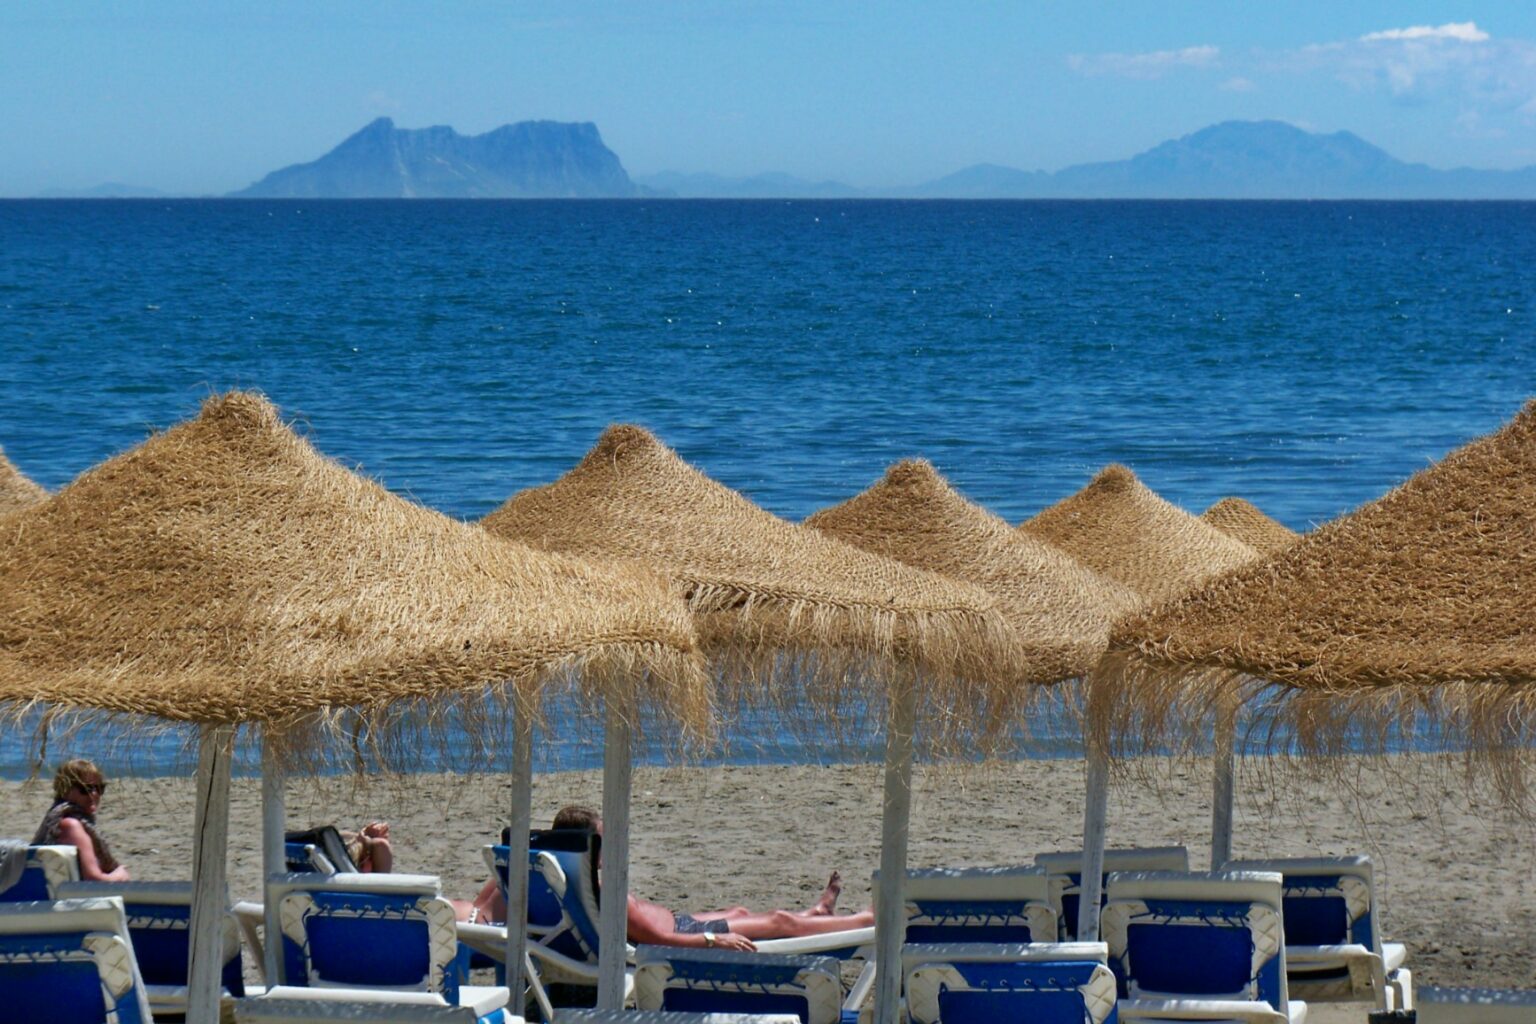 De idyllische stranden van Estepona: voor een onvergetelijke zomervakantie